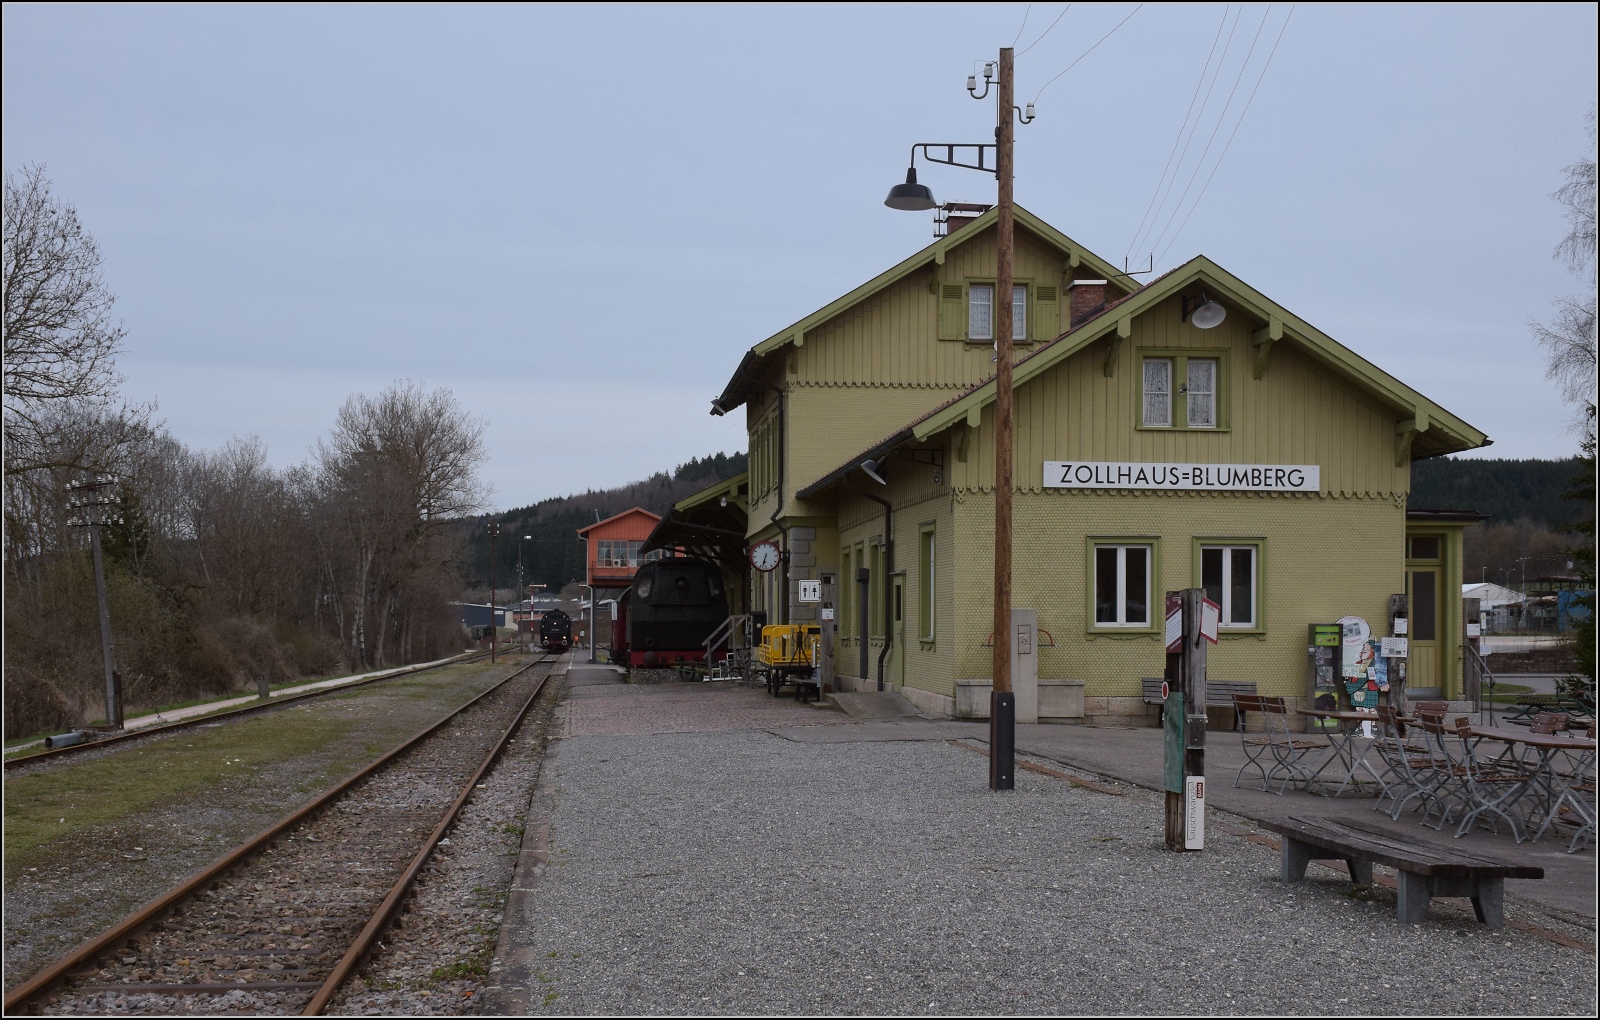 50 Jahre EFZ.

Rckreise von 50 2988 der DSB. In Blumberg werden die B3yg-Wagen abgestellt. April 2023.